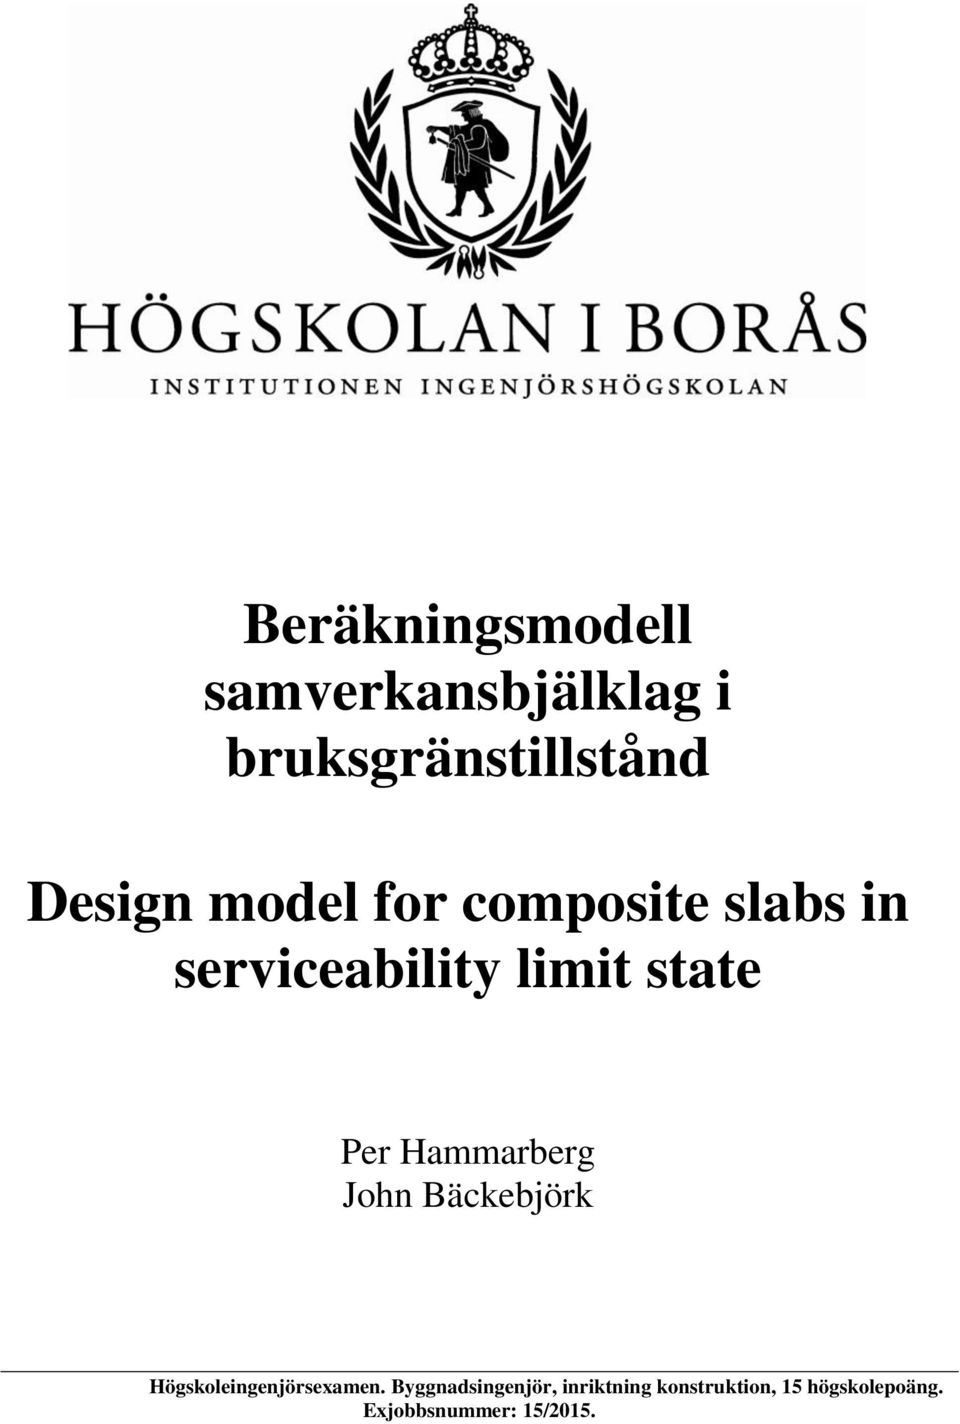 Hammarberg John Bäckebjörk Högskoleingenjörsexamen.